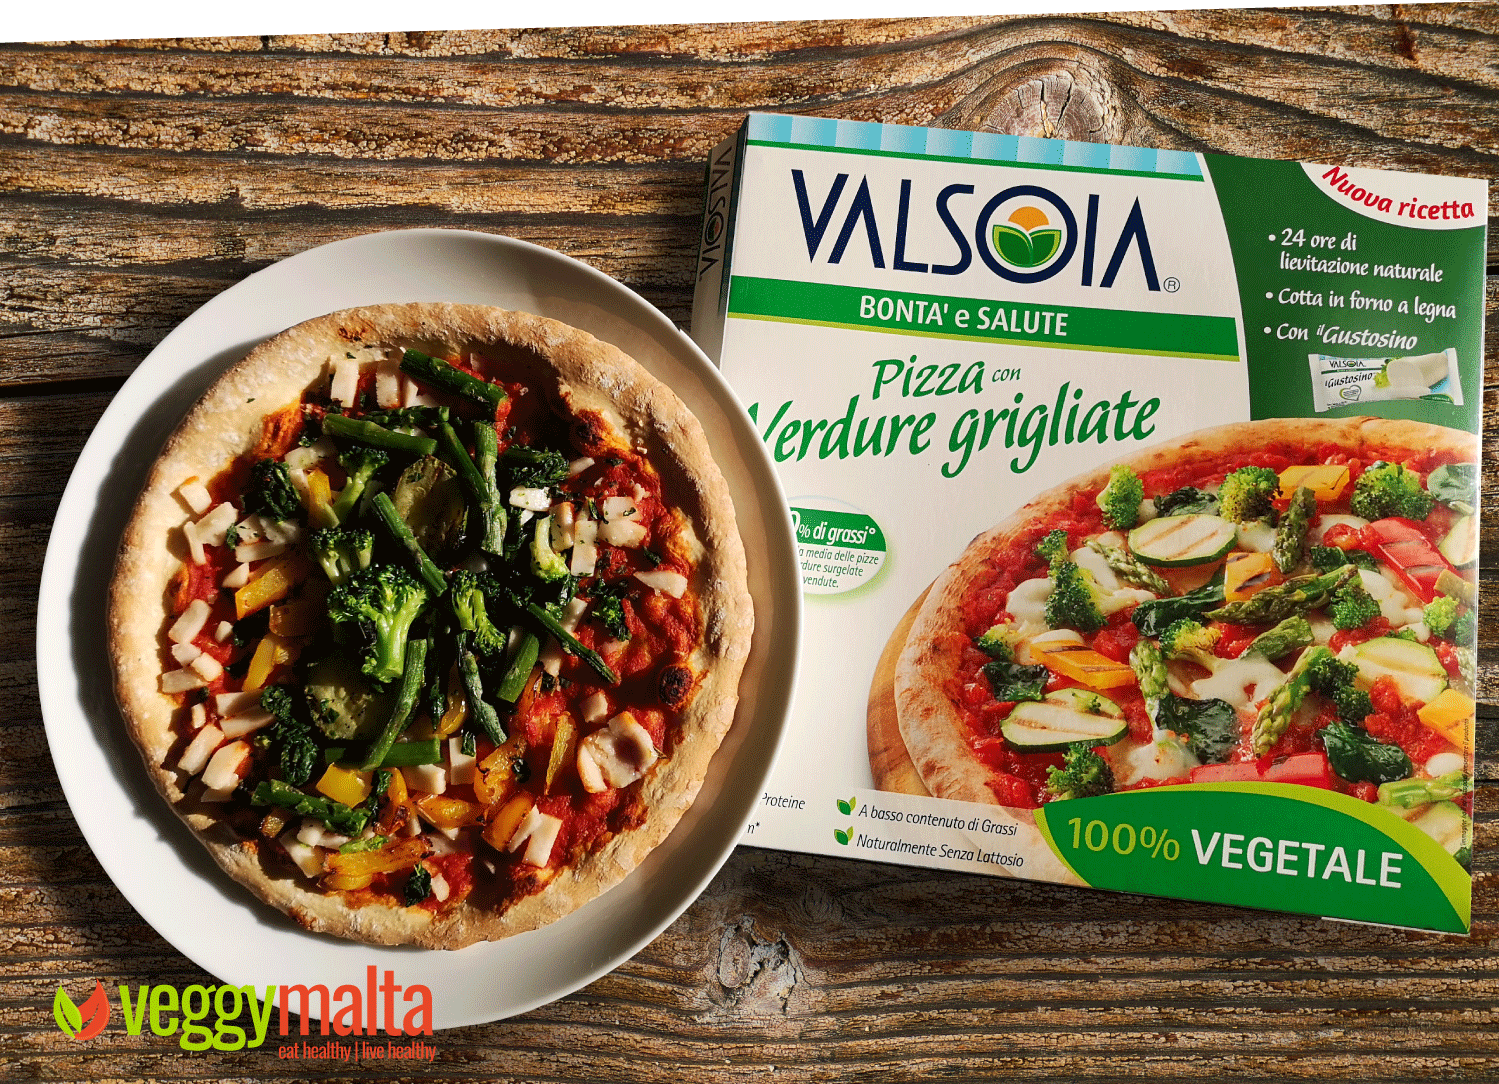 valsoia-pizza-verdure-grilliate-on-wood